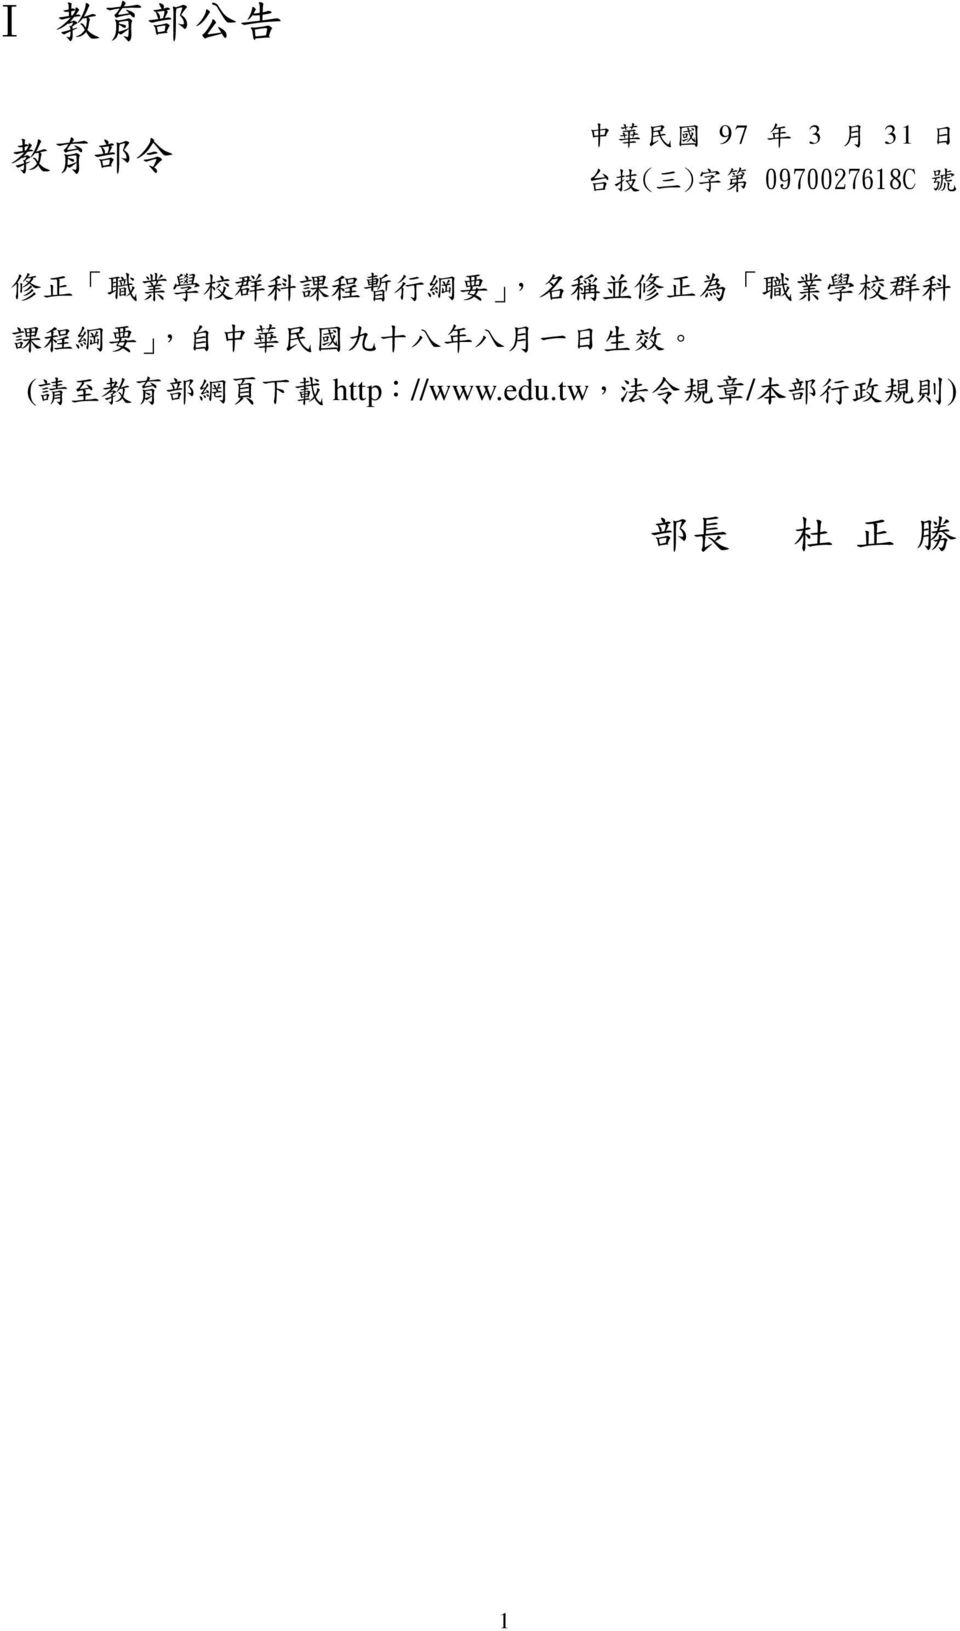 學 校 群 科 課 程 綱 要, 自 中 華 民 國 九 十 八 年 八 月 一 日 生 效 ( 請 至 教 育 部